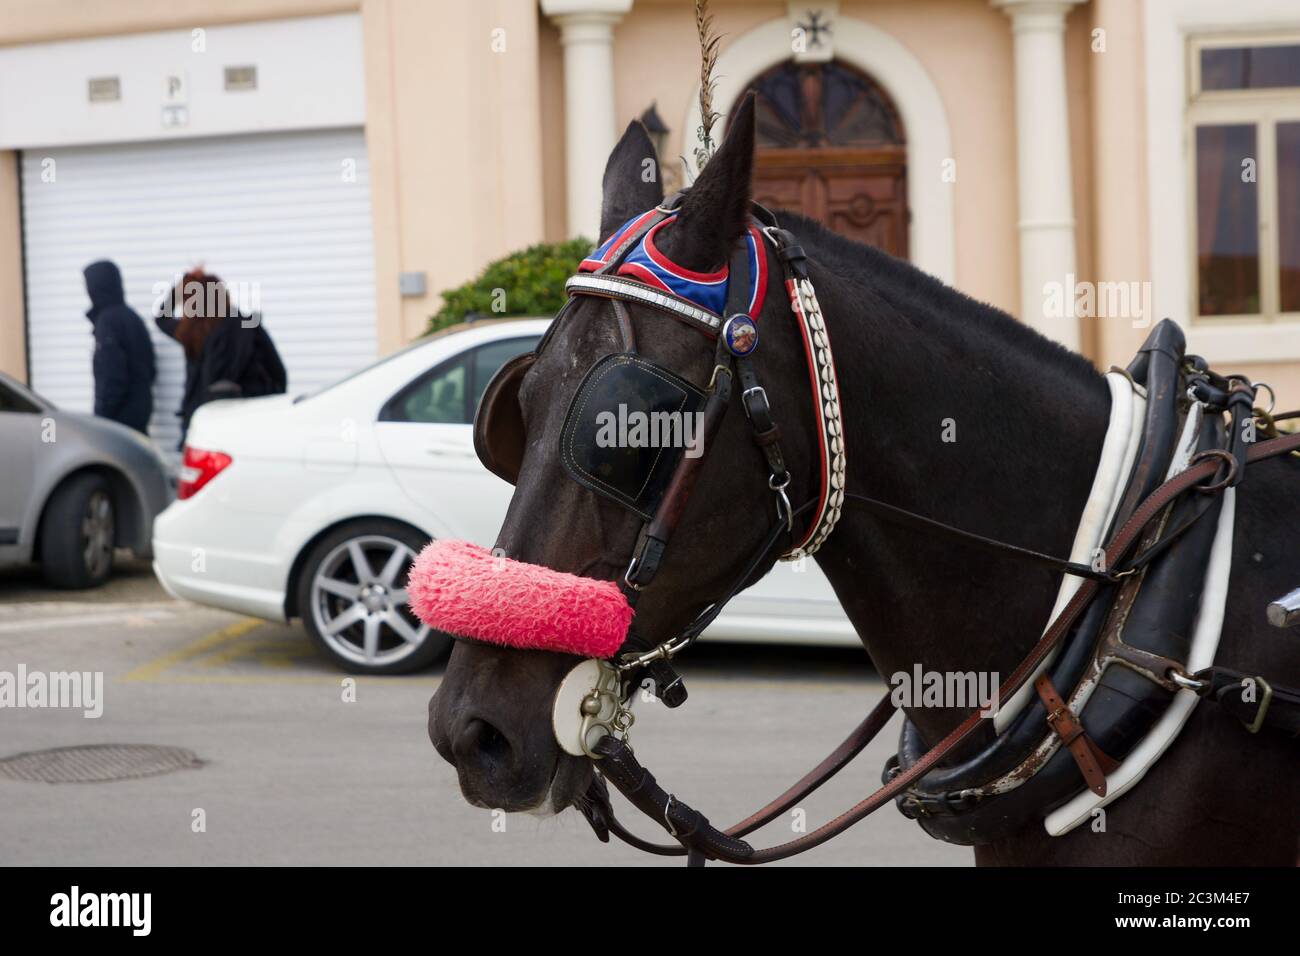 VALLETTA, MALTA - DEC 31st, 2019: Horse drawn carriage in the city centre of Valletta Stock Photo